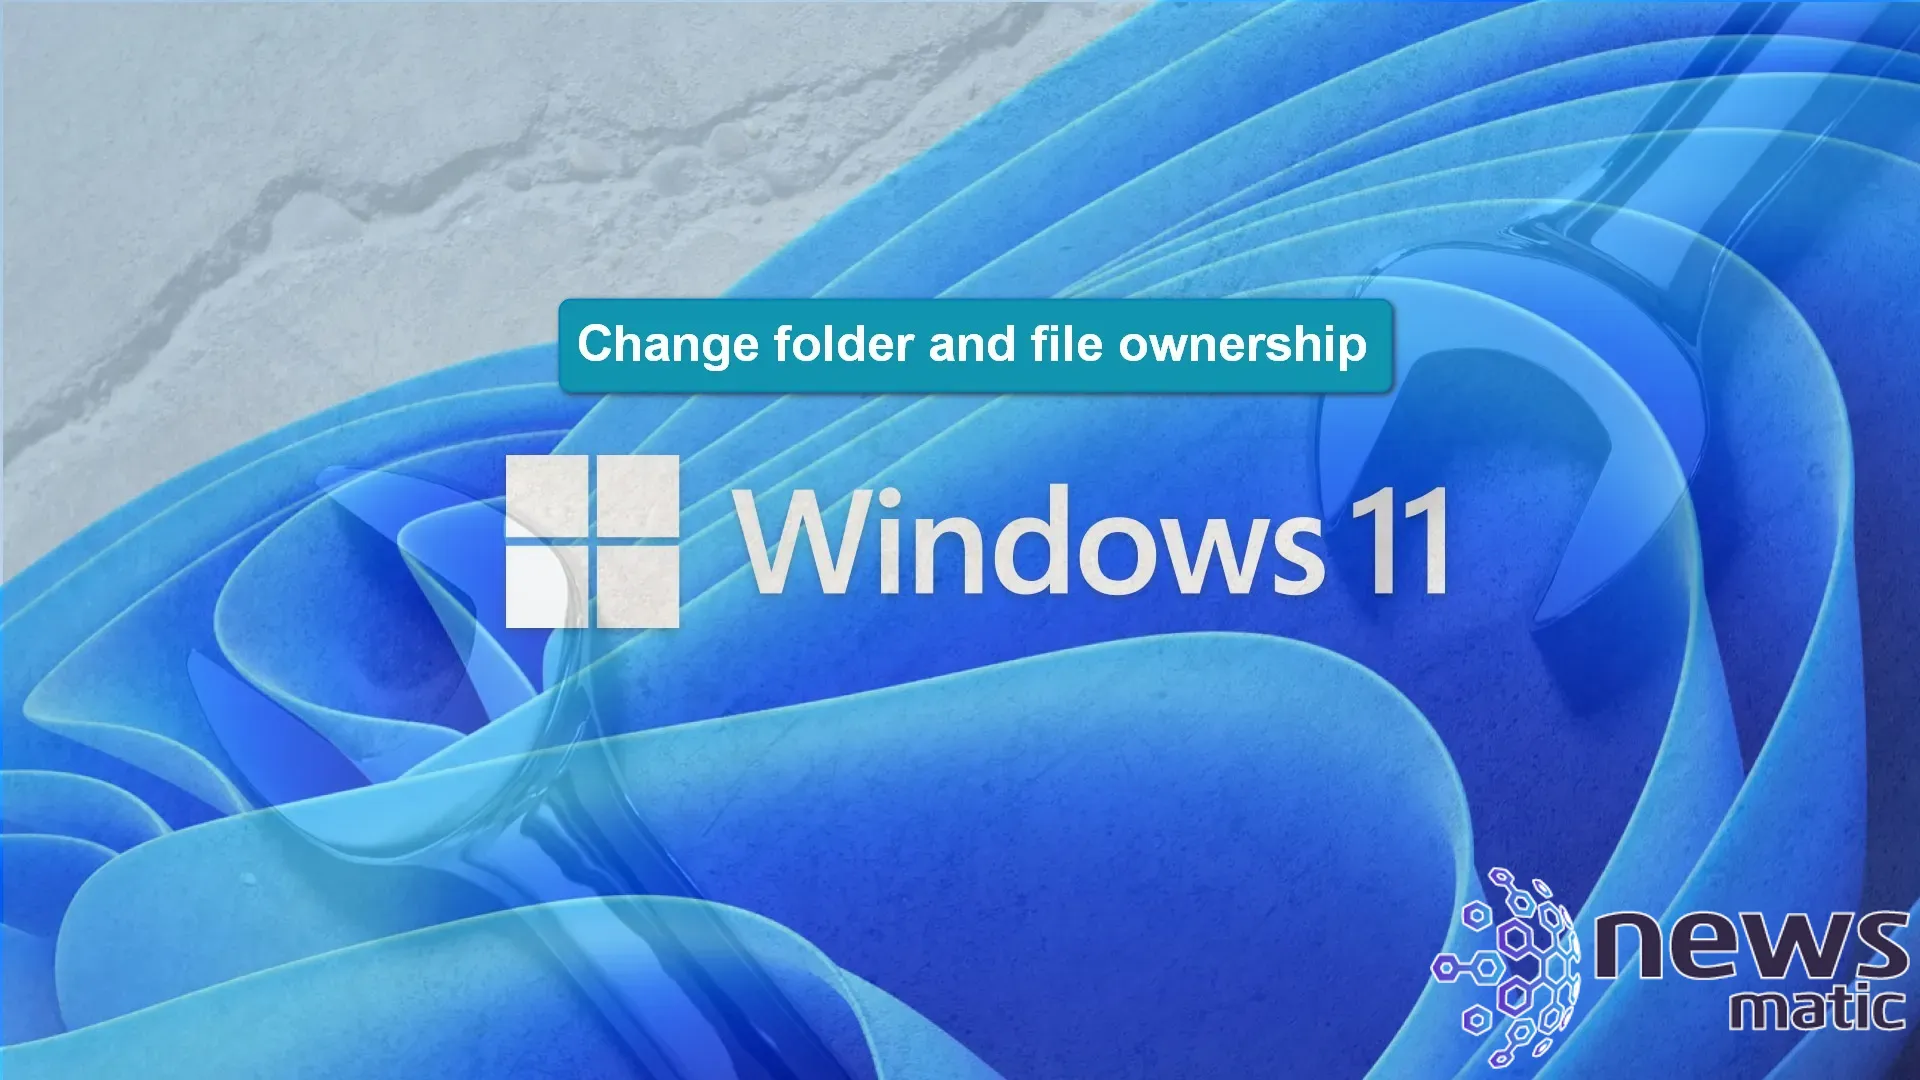 Cómo cambiar la propiedad y control de archivos y carpetas en Windows 11 - Software | Imagen 1 Newsmatic